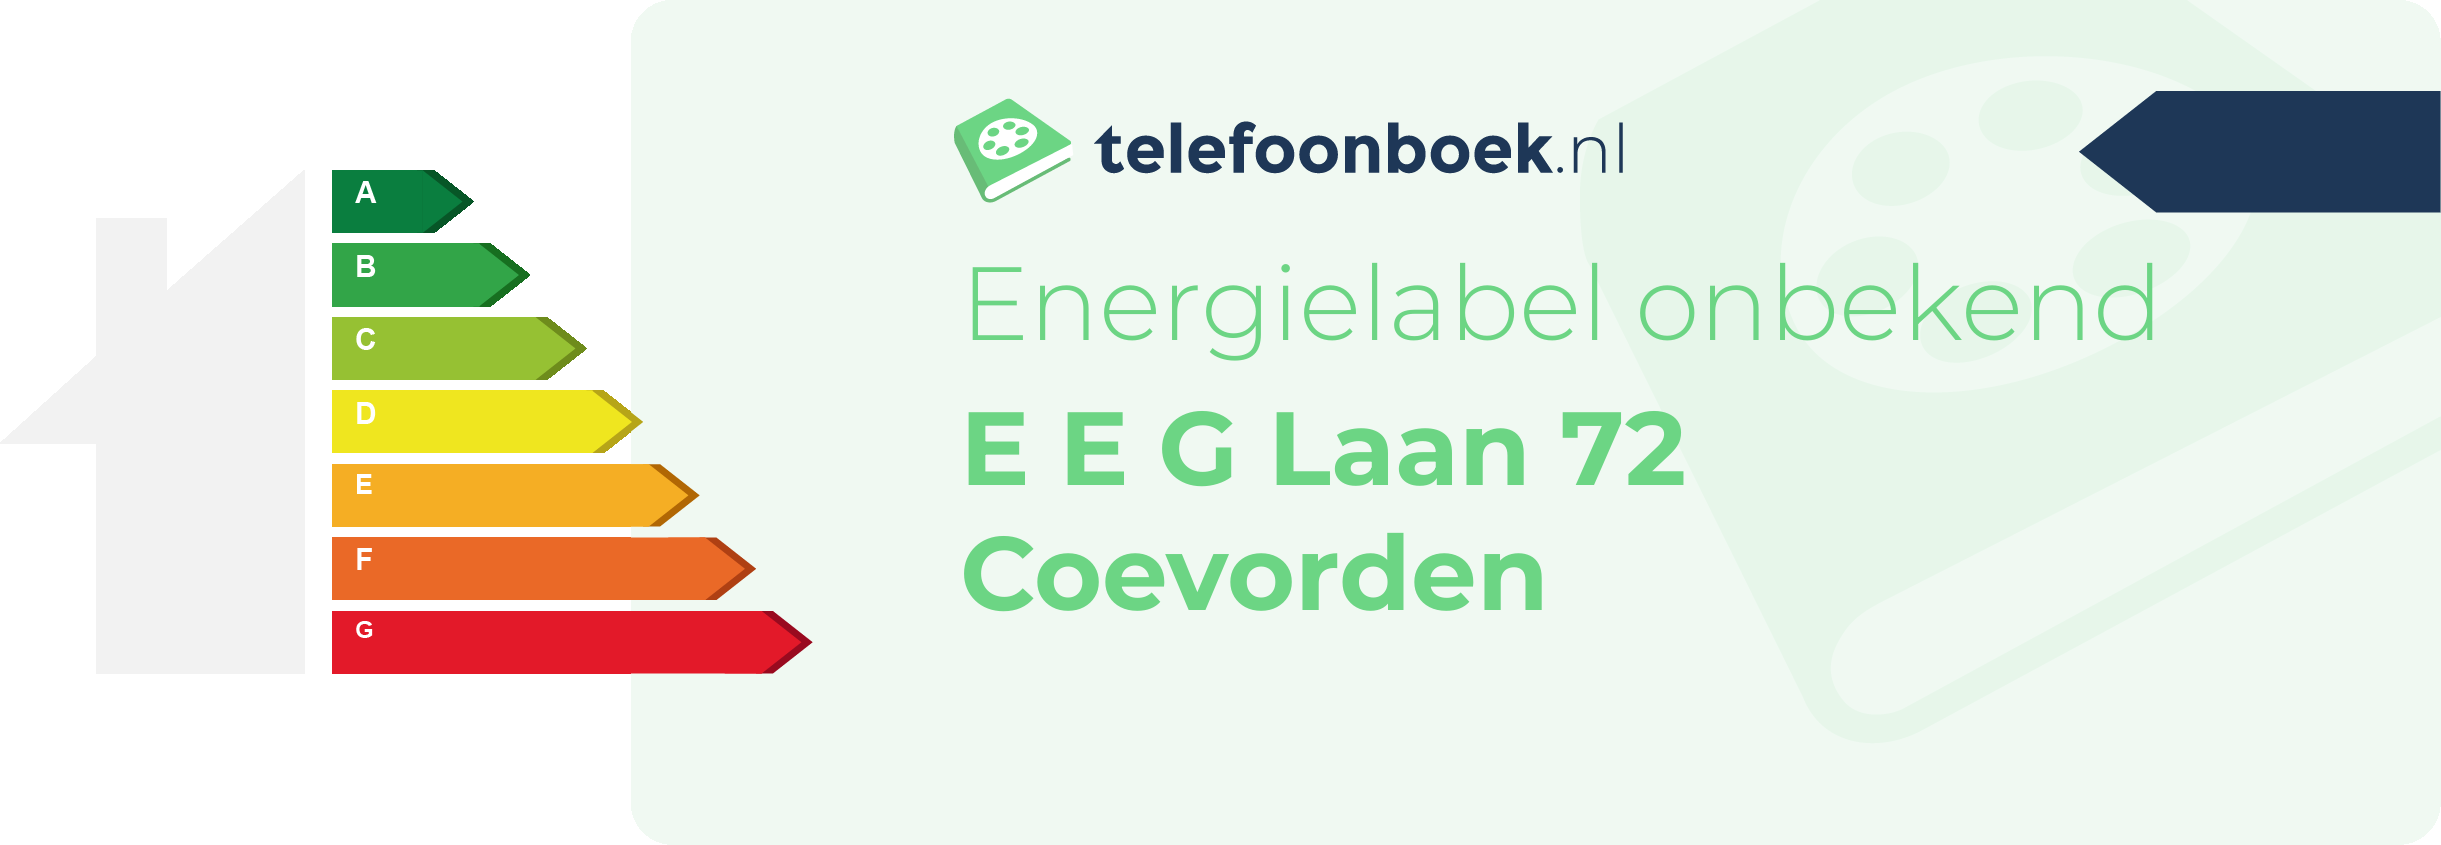 Energielabel E E G Laan 72 Coevorden